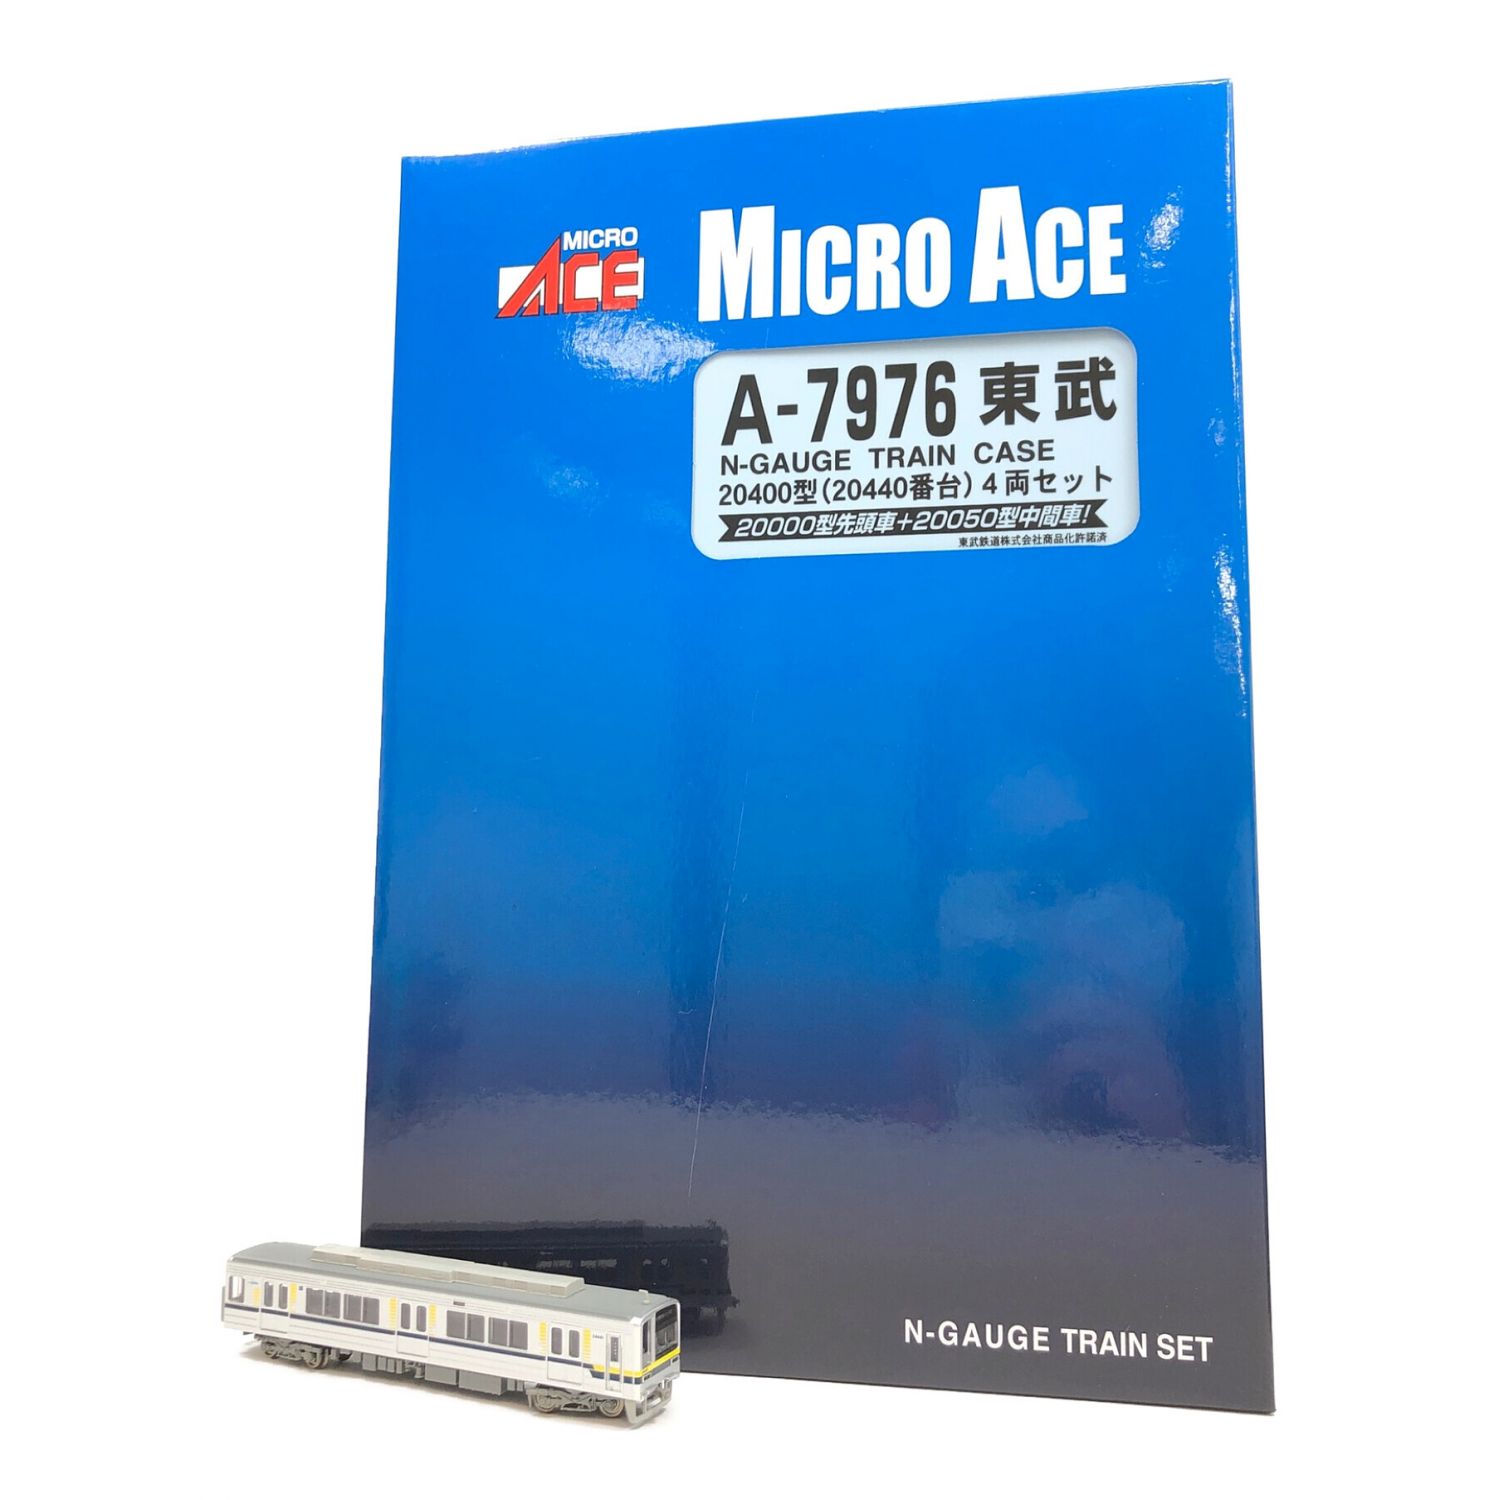 MICRO ACE (マイクロエース) Nゲージ A-7976 東武20400型20440番台4両 